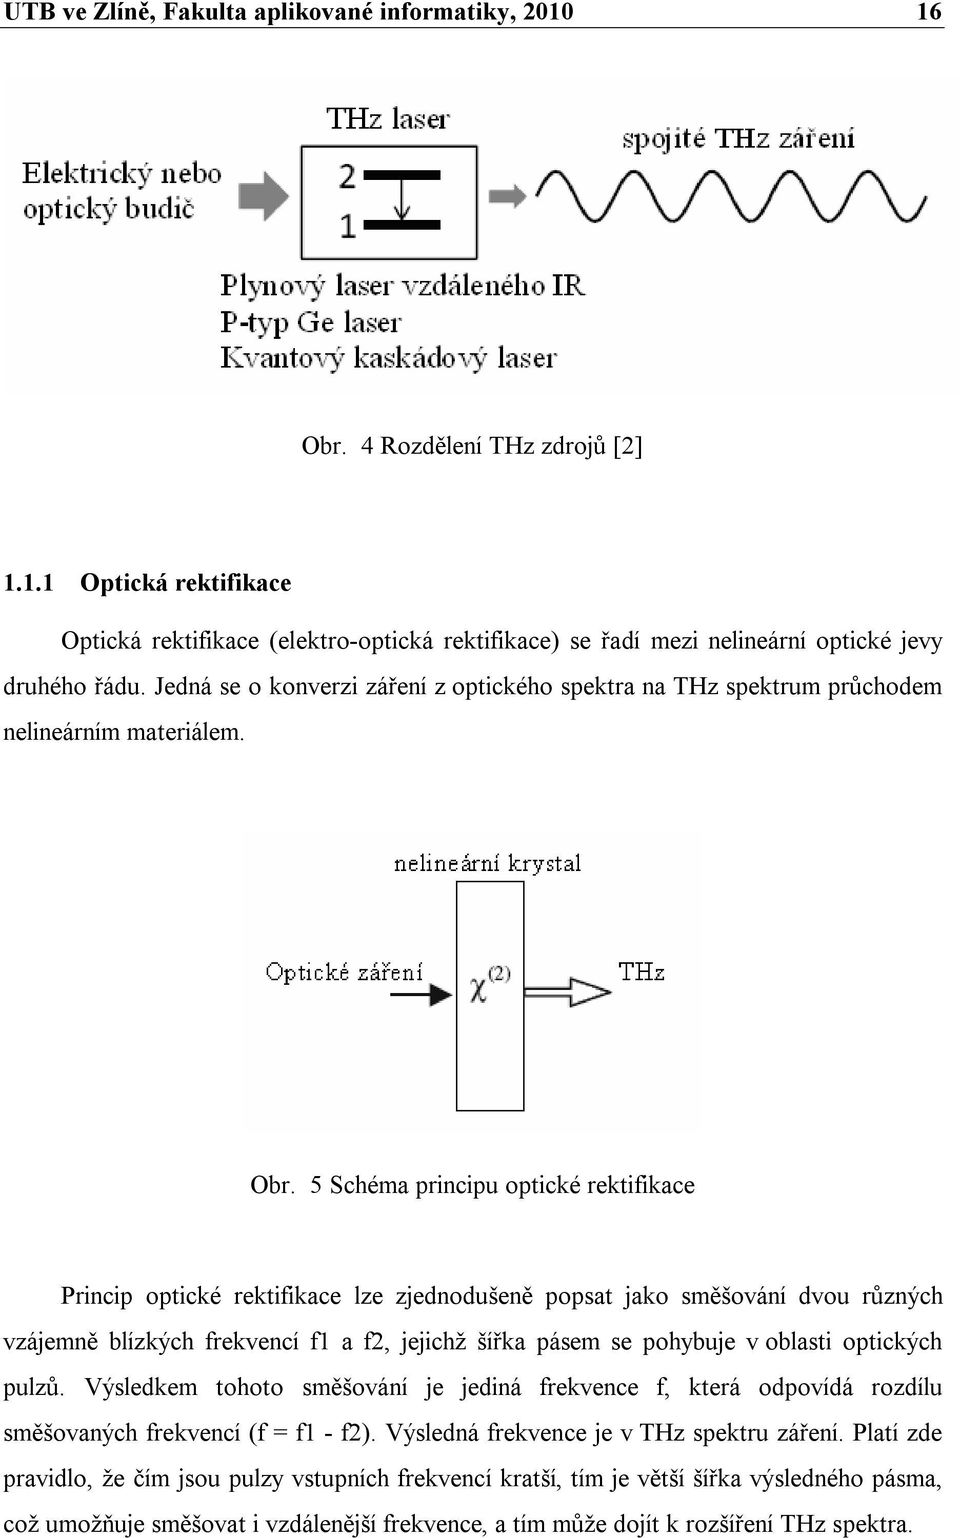 5 Schéma principu optické rektifikace Princip optické rektifikace lze zjednodušeně popsat jako směšování dvou různých vzájemně blízkých frekvencí f1 a f2, jejichž šířka pásem se pohybuje v oblasti